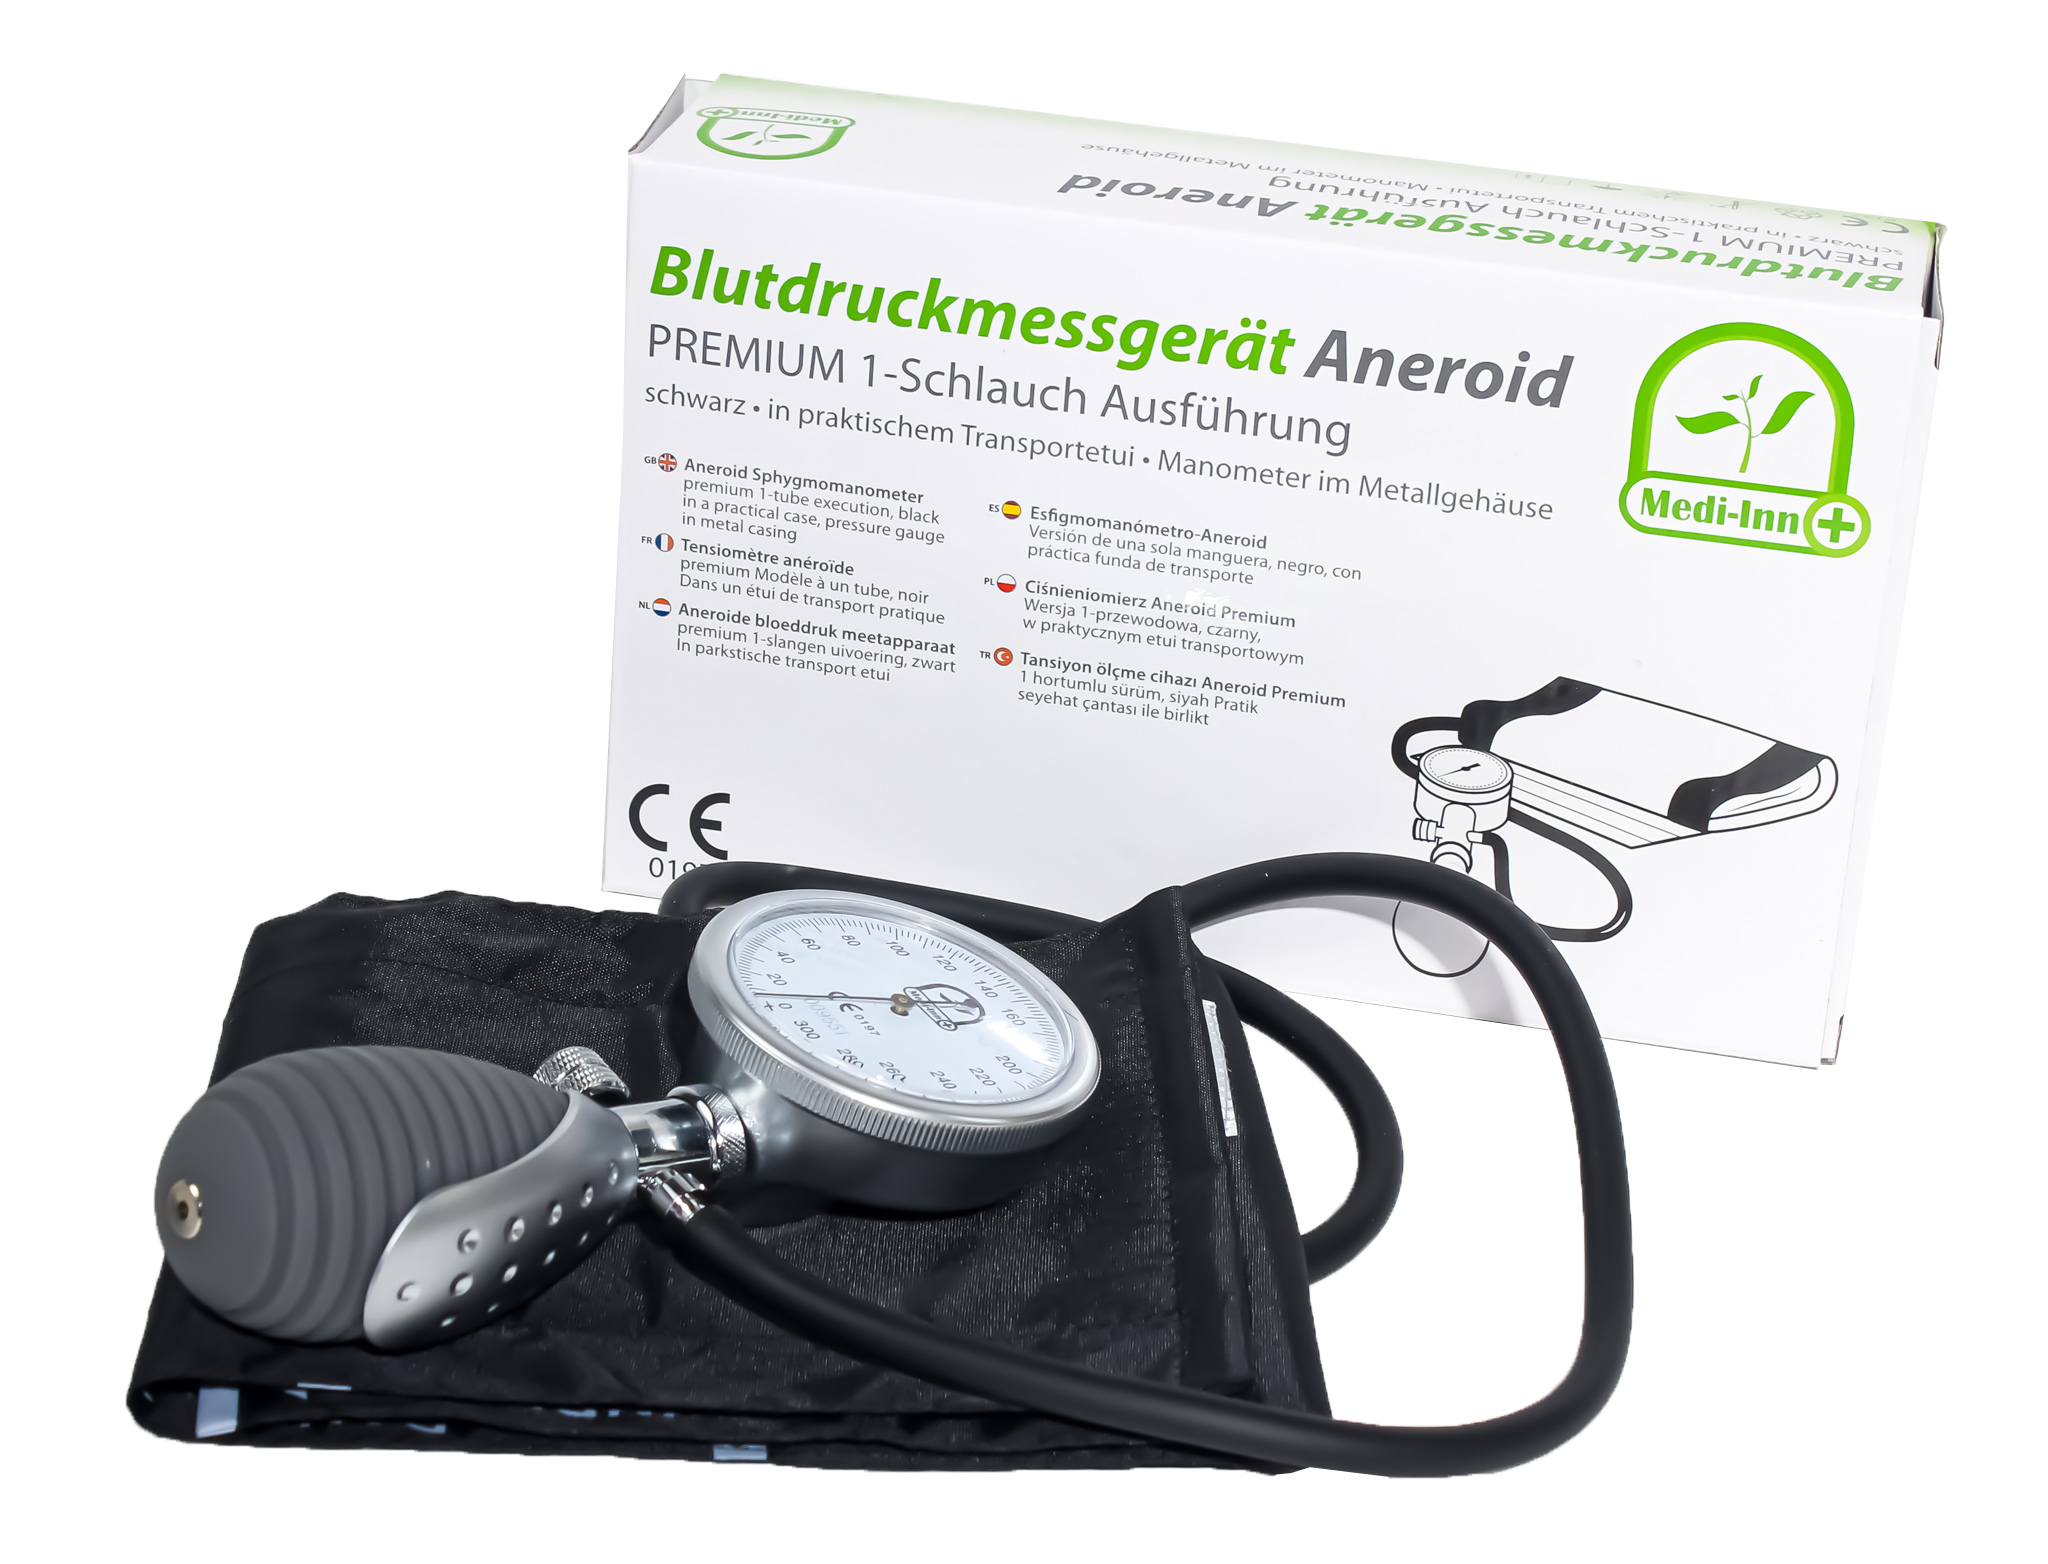 Blutdruckmessgerät Aneroid Premium, 1-Schlauch-System